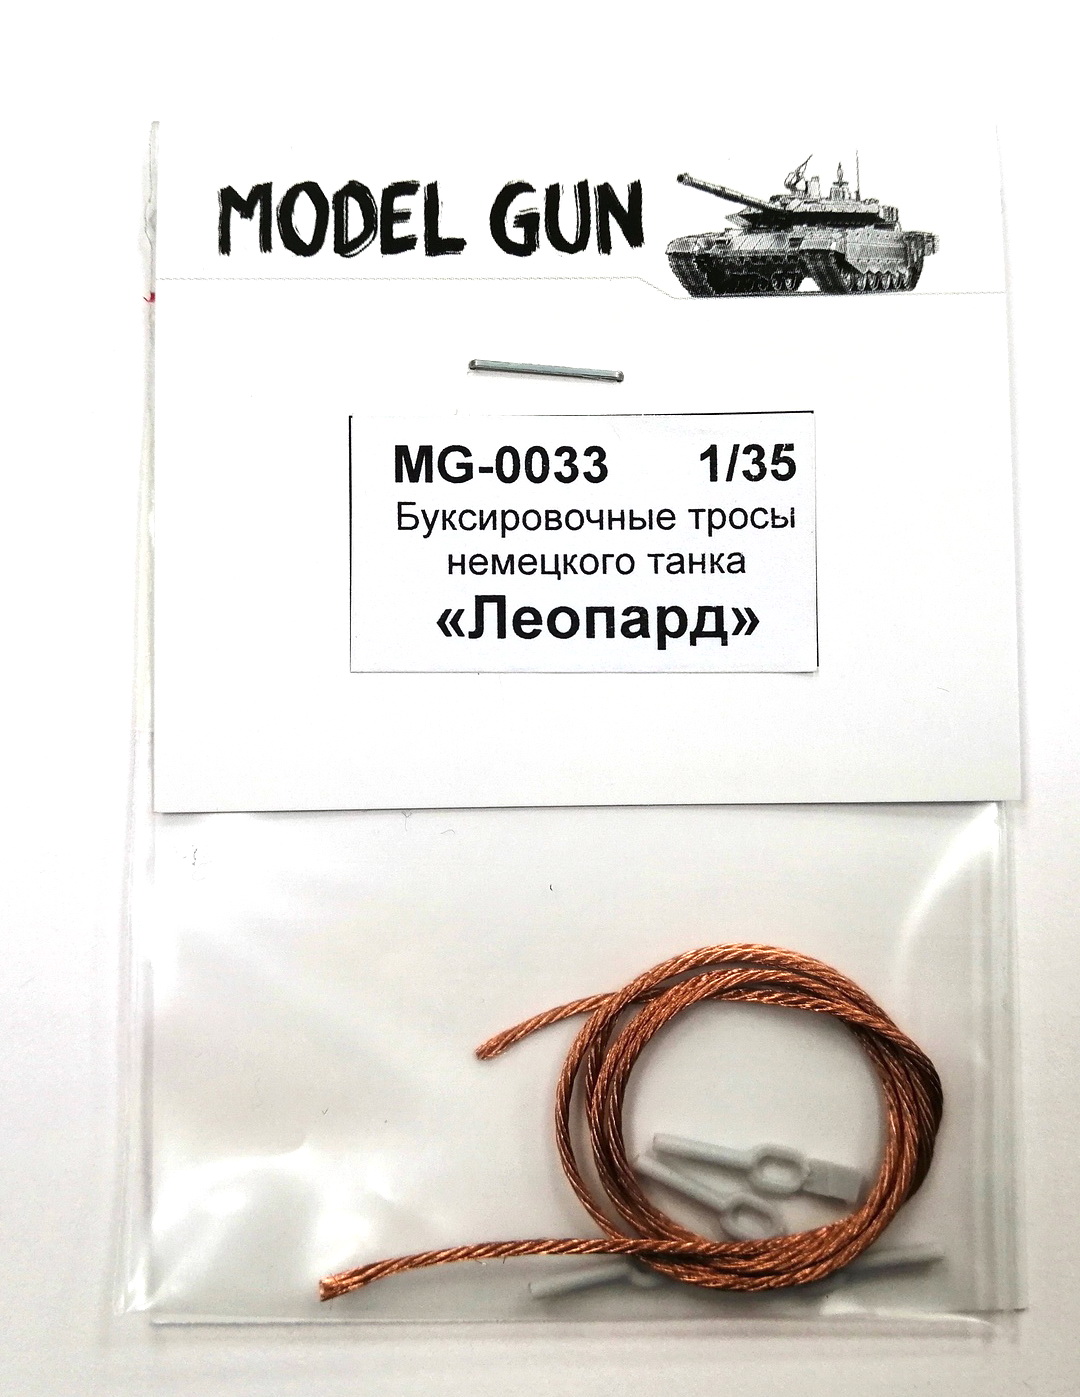 MG-0033  дополнения из металла  Буксировочные тросы "ЛЕОПАРД-1/2"  (1:35)